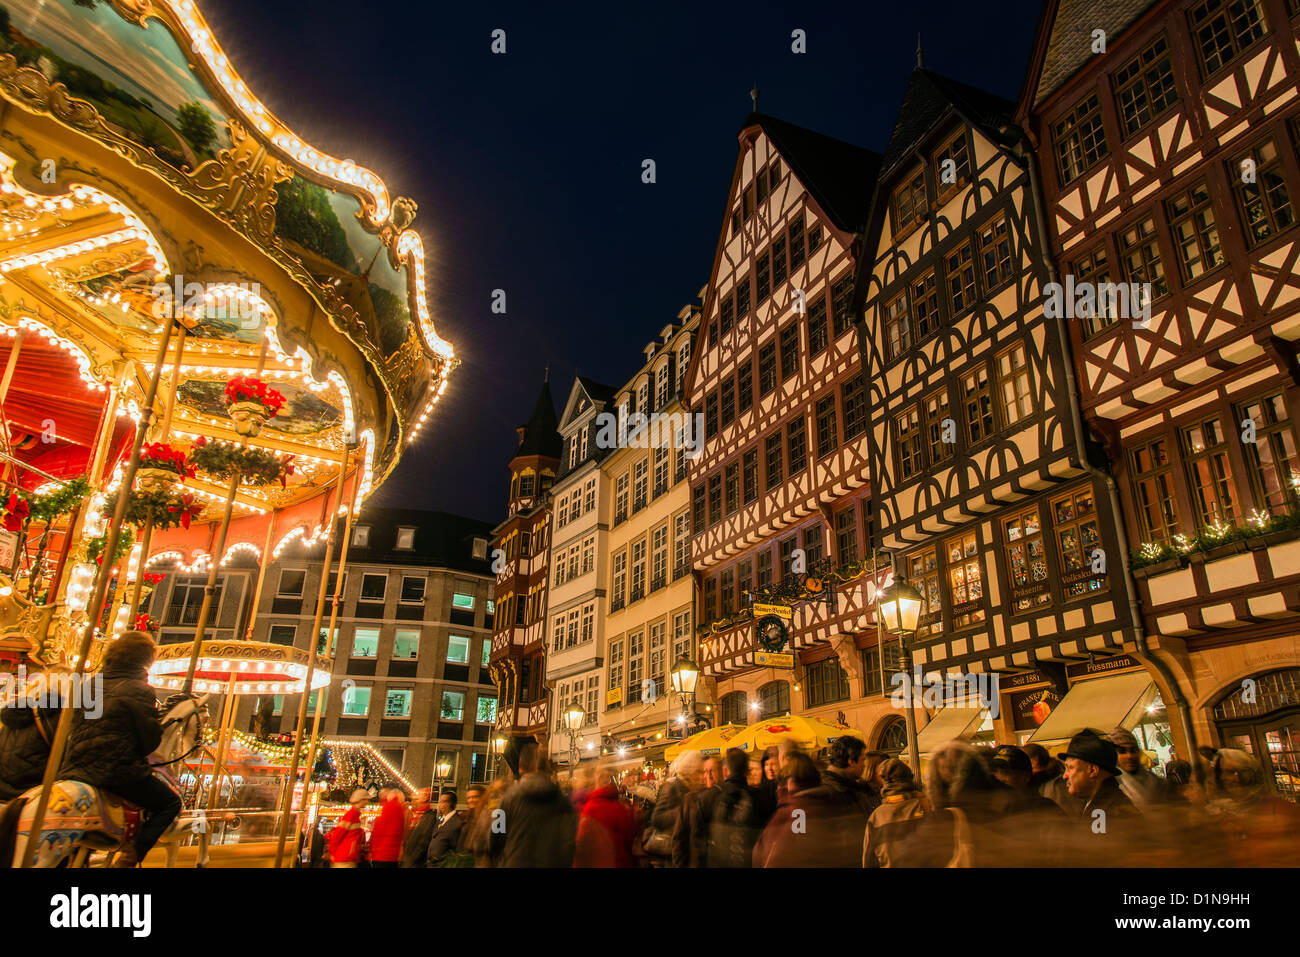 Vue de la nuit, Romer, Römerberg avec merry-go-round lights, Frankfurt am Main, Hesse, Allemagne Banque D'Images